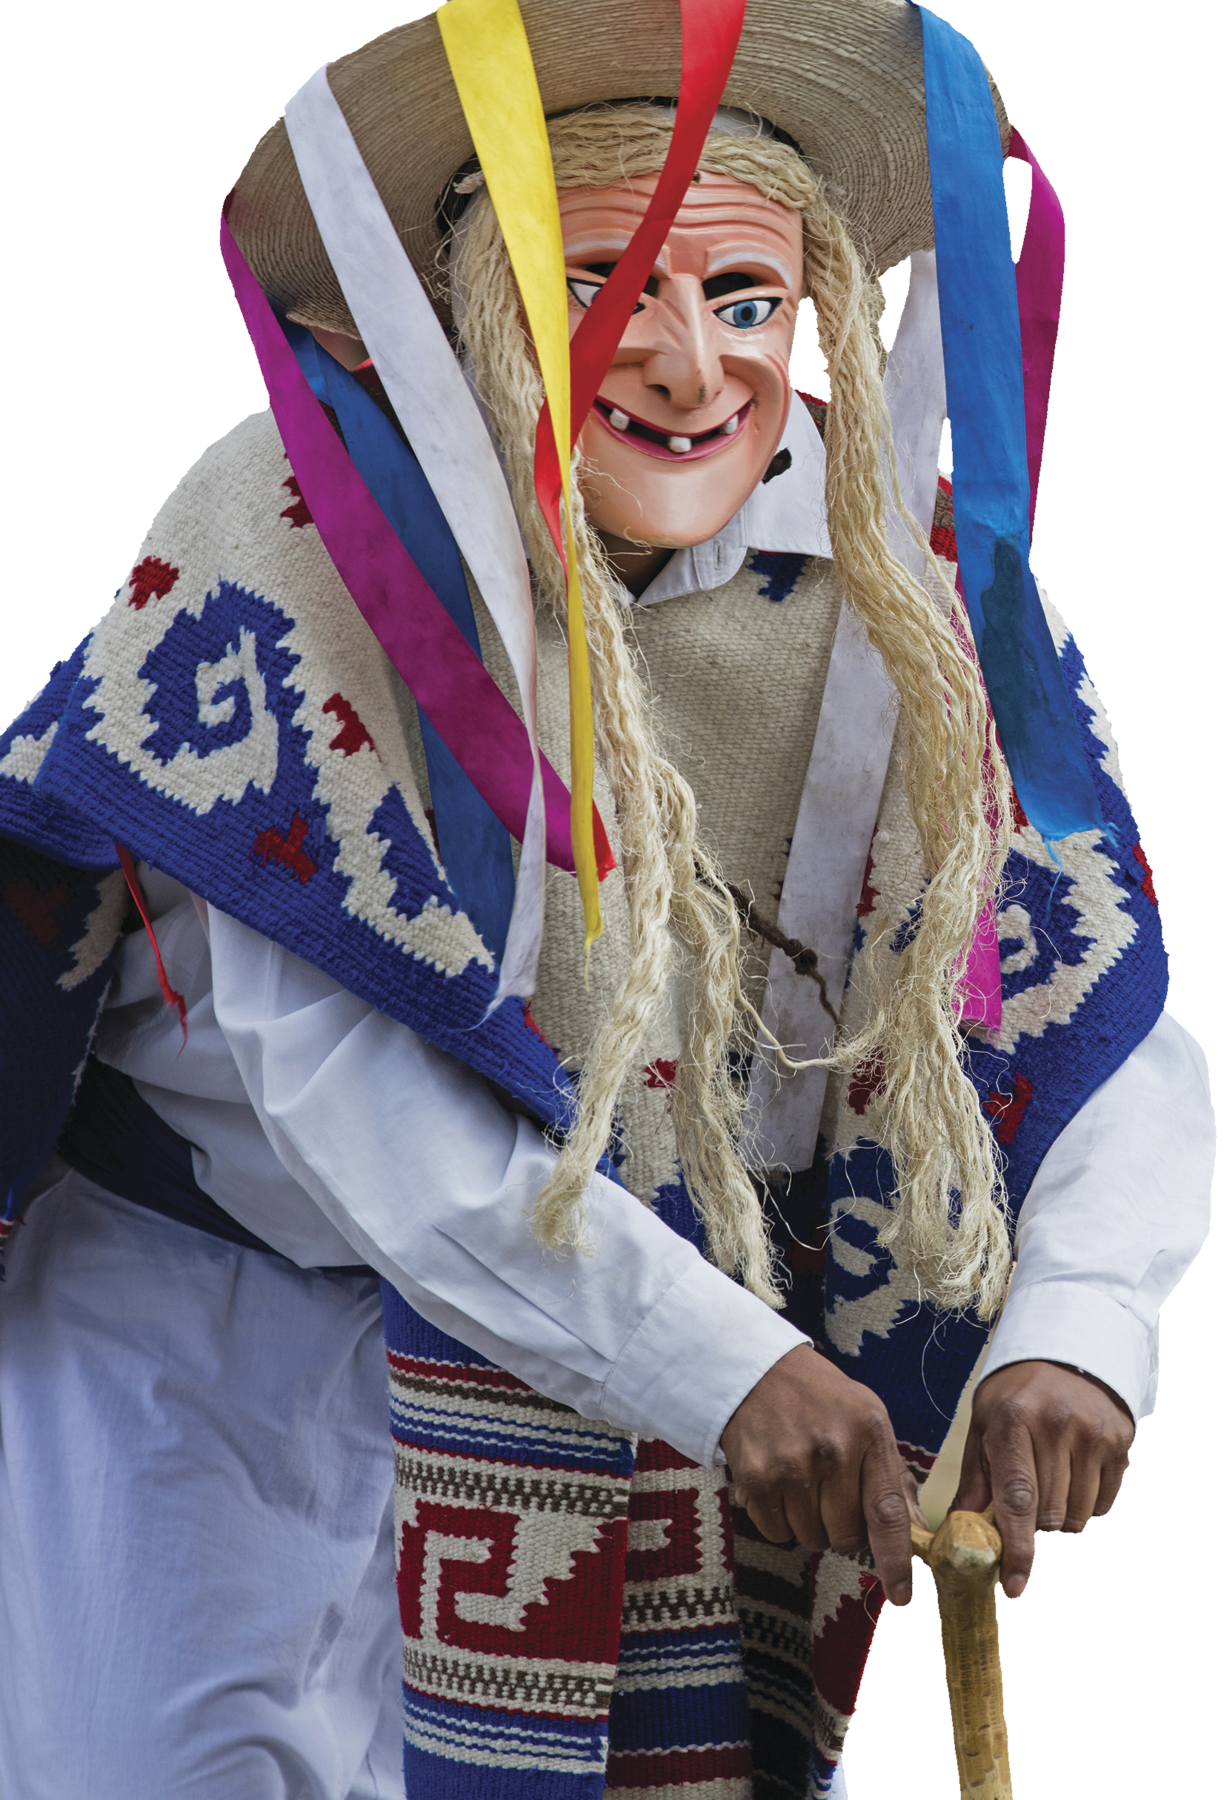 Fotografia. Detalhe de pessoa usando roupas brancas, uma máscara de idosa, com cabelos loiros feitos de palha e chapéu de palha com fitas coloridas que saem do topo do chapéu, e manto colorido. Ela está apoiada em uma bengala de madeira com as duas mãos.